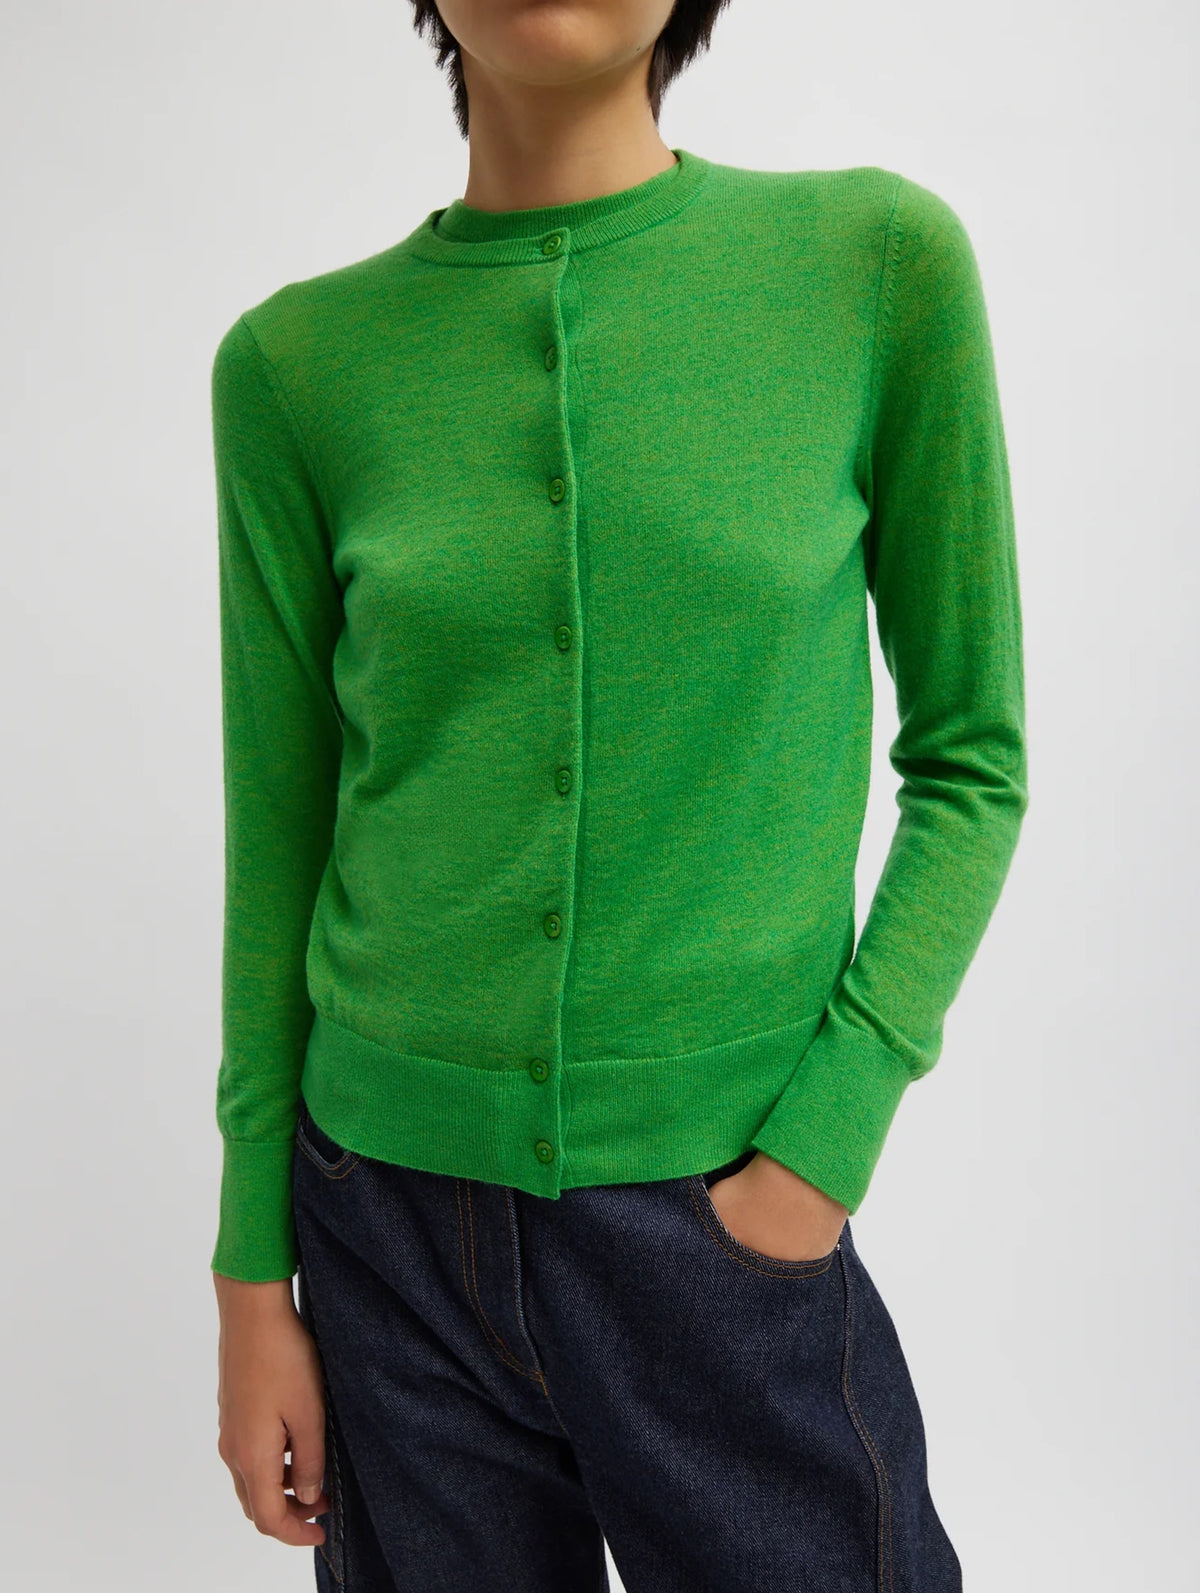 Skinlike Mercerized Wool Cardigan in Green